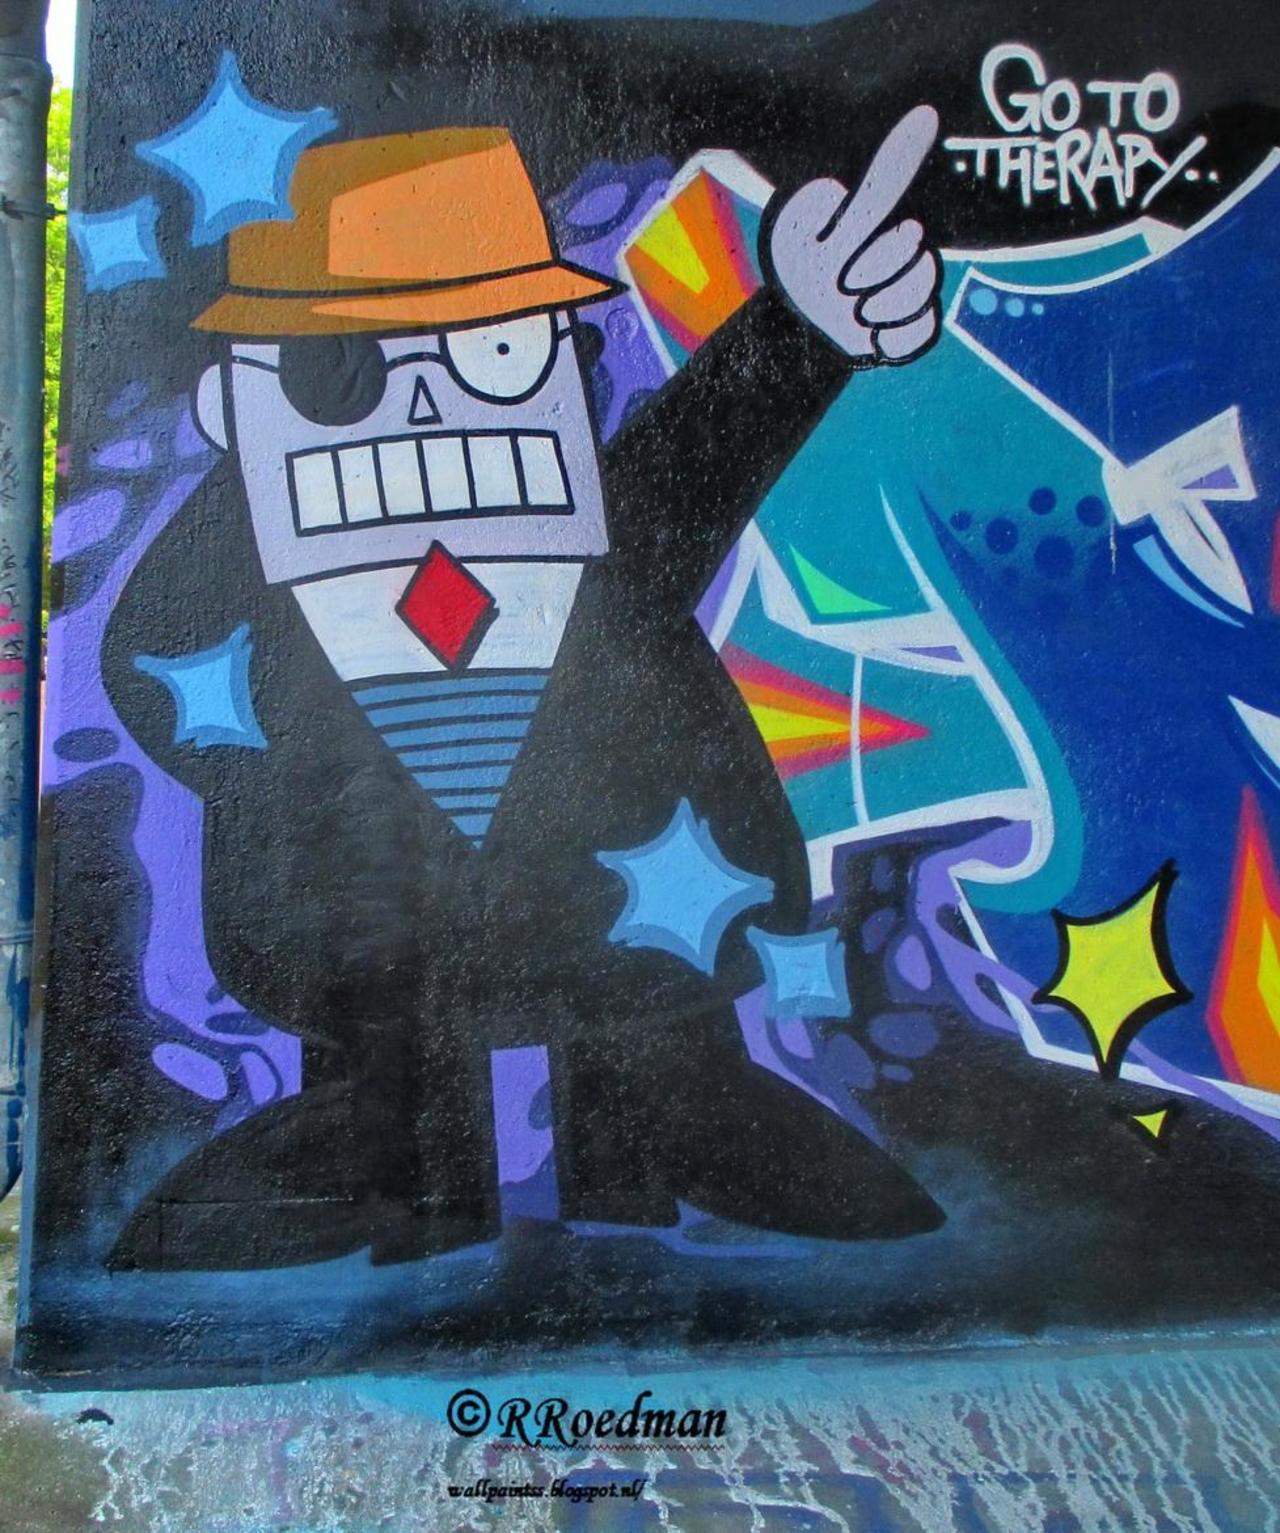 RT @RRoedman: #streetart #graffiti #mural #cartoon #Sigmund Go to therapy #Amsterdam ,2 pics at http://wallpaintss.blogspot.nl http://t.co/EPdVRcZU45